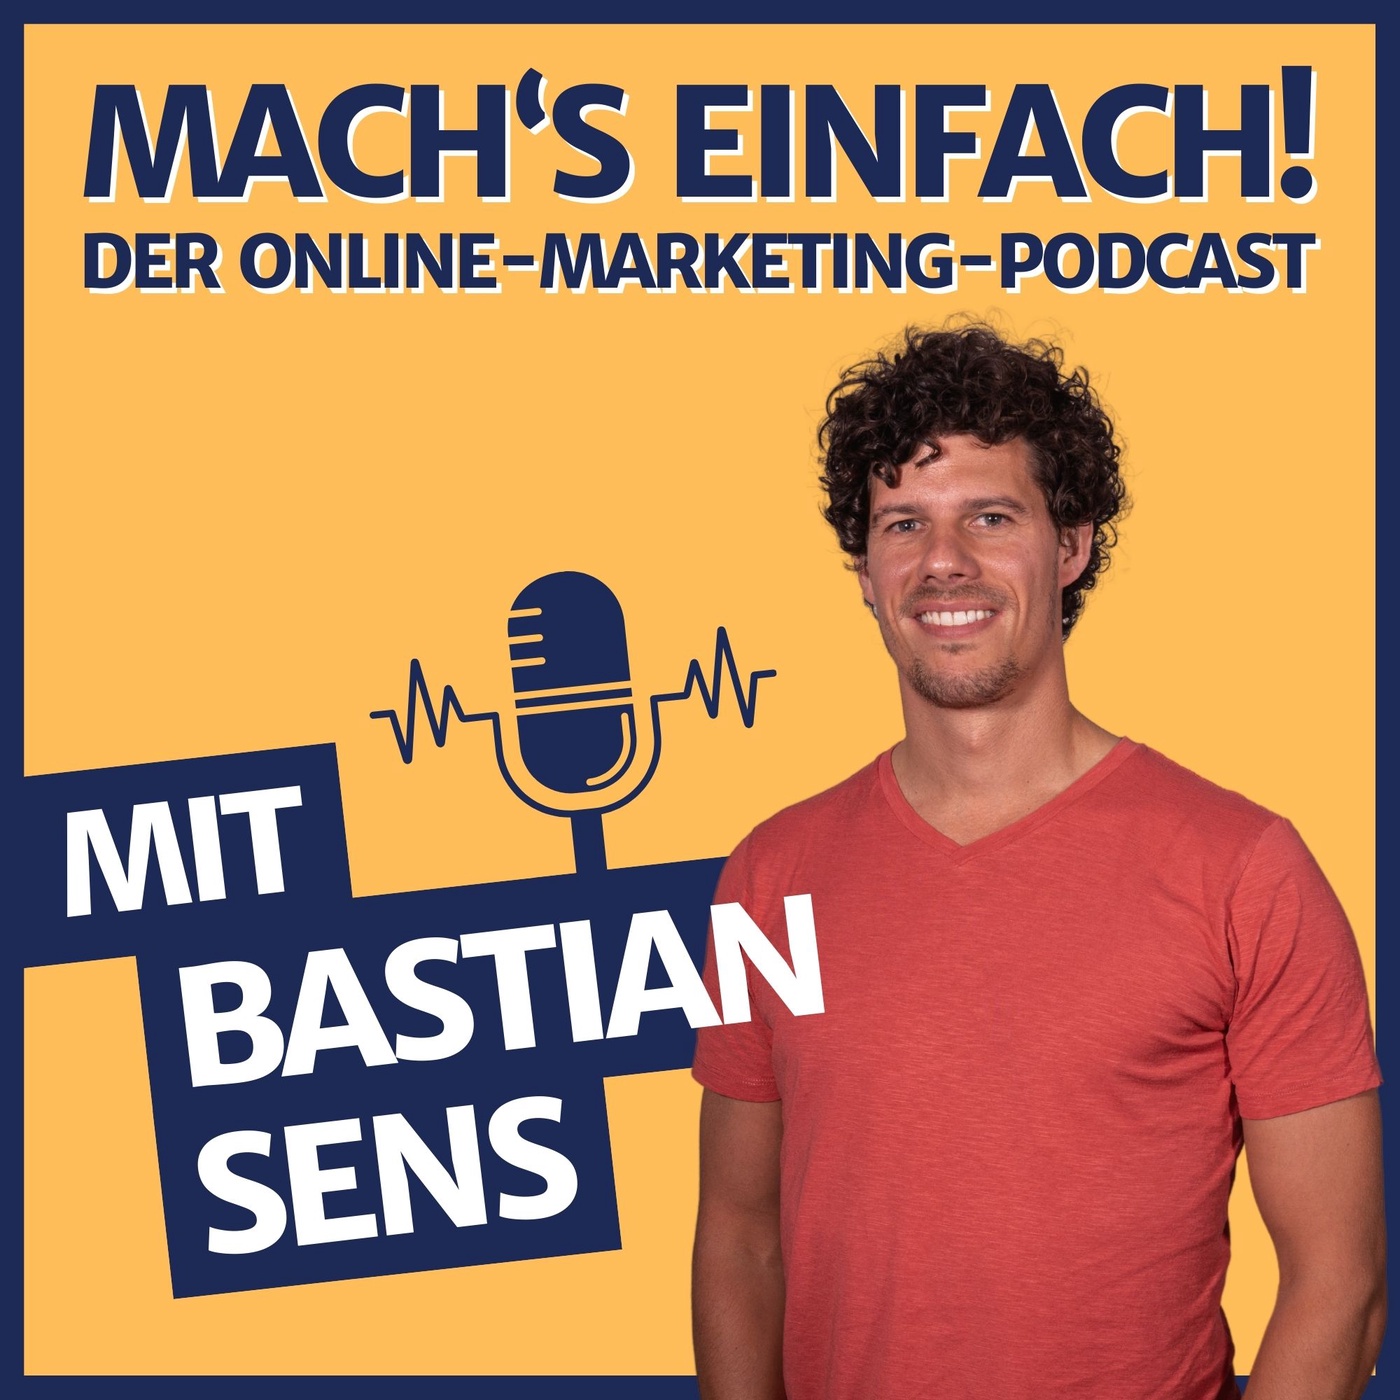 Mach‘s einfach - Der Online-Marketing-Podcast mit Bastian Sens